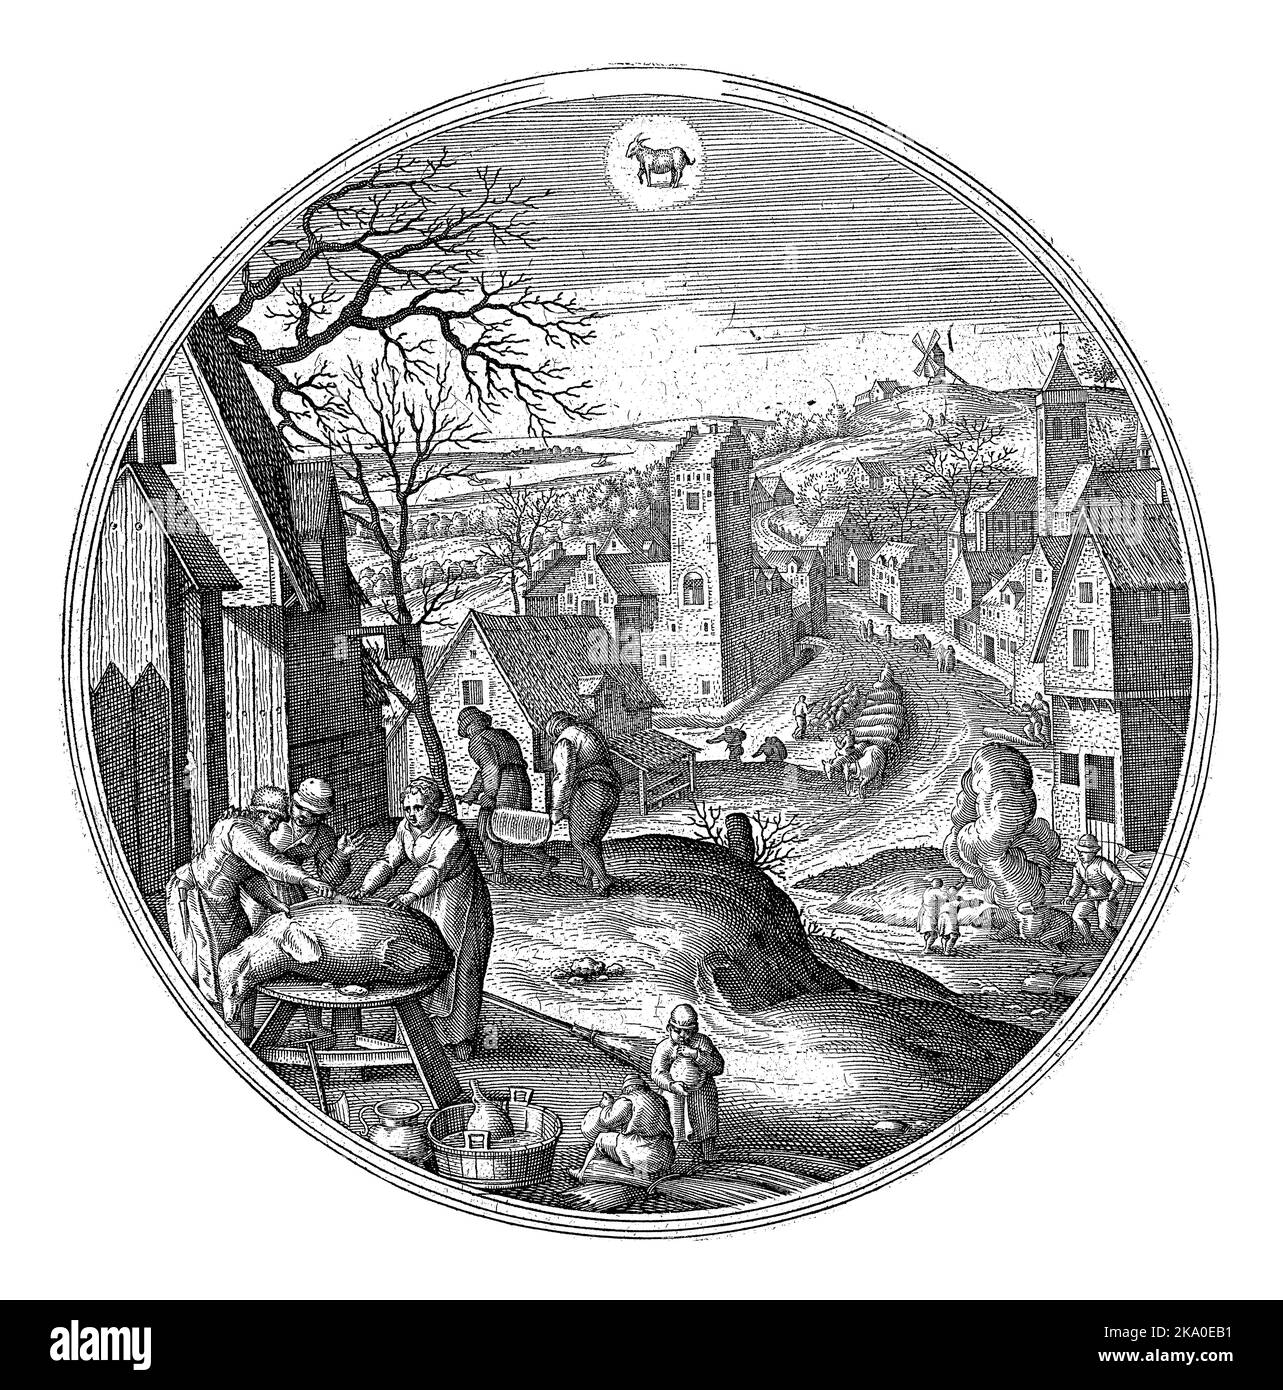 Dicembre, Adriaen Collaert, dopo Hans Bol, 1578 - 1582 cornice rotonda con un paesaggio invernale con scene invernali. Dicembre è il mese della macellazione. Foto Stock